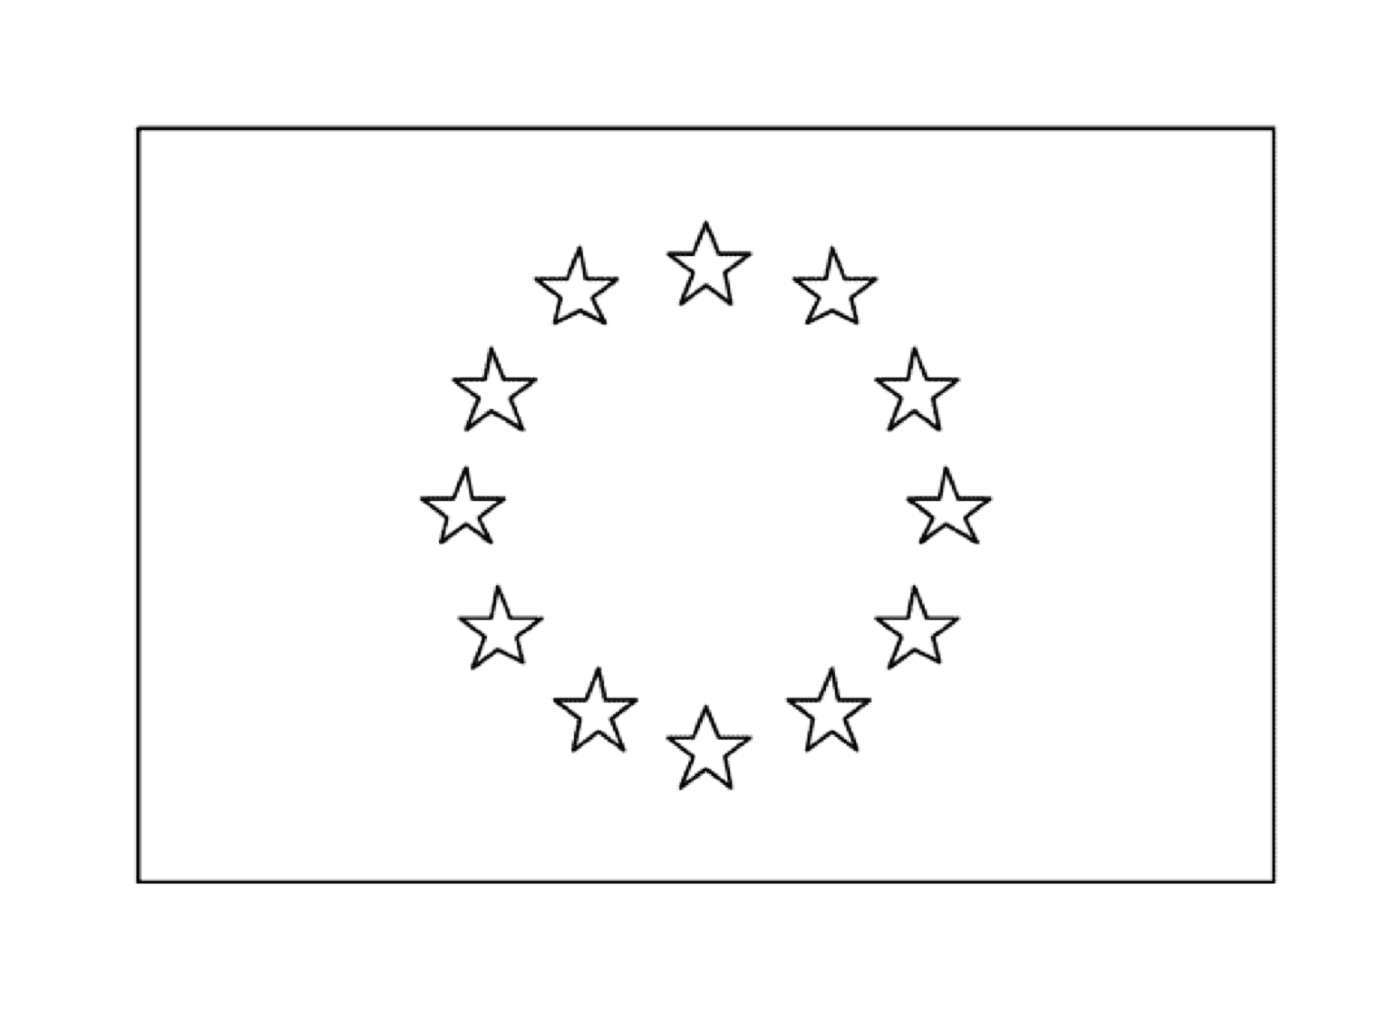  एक यूरोपीय फ्लैग 